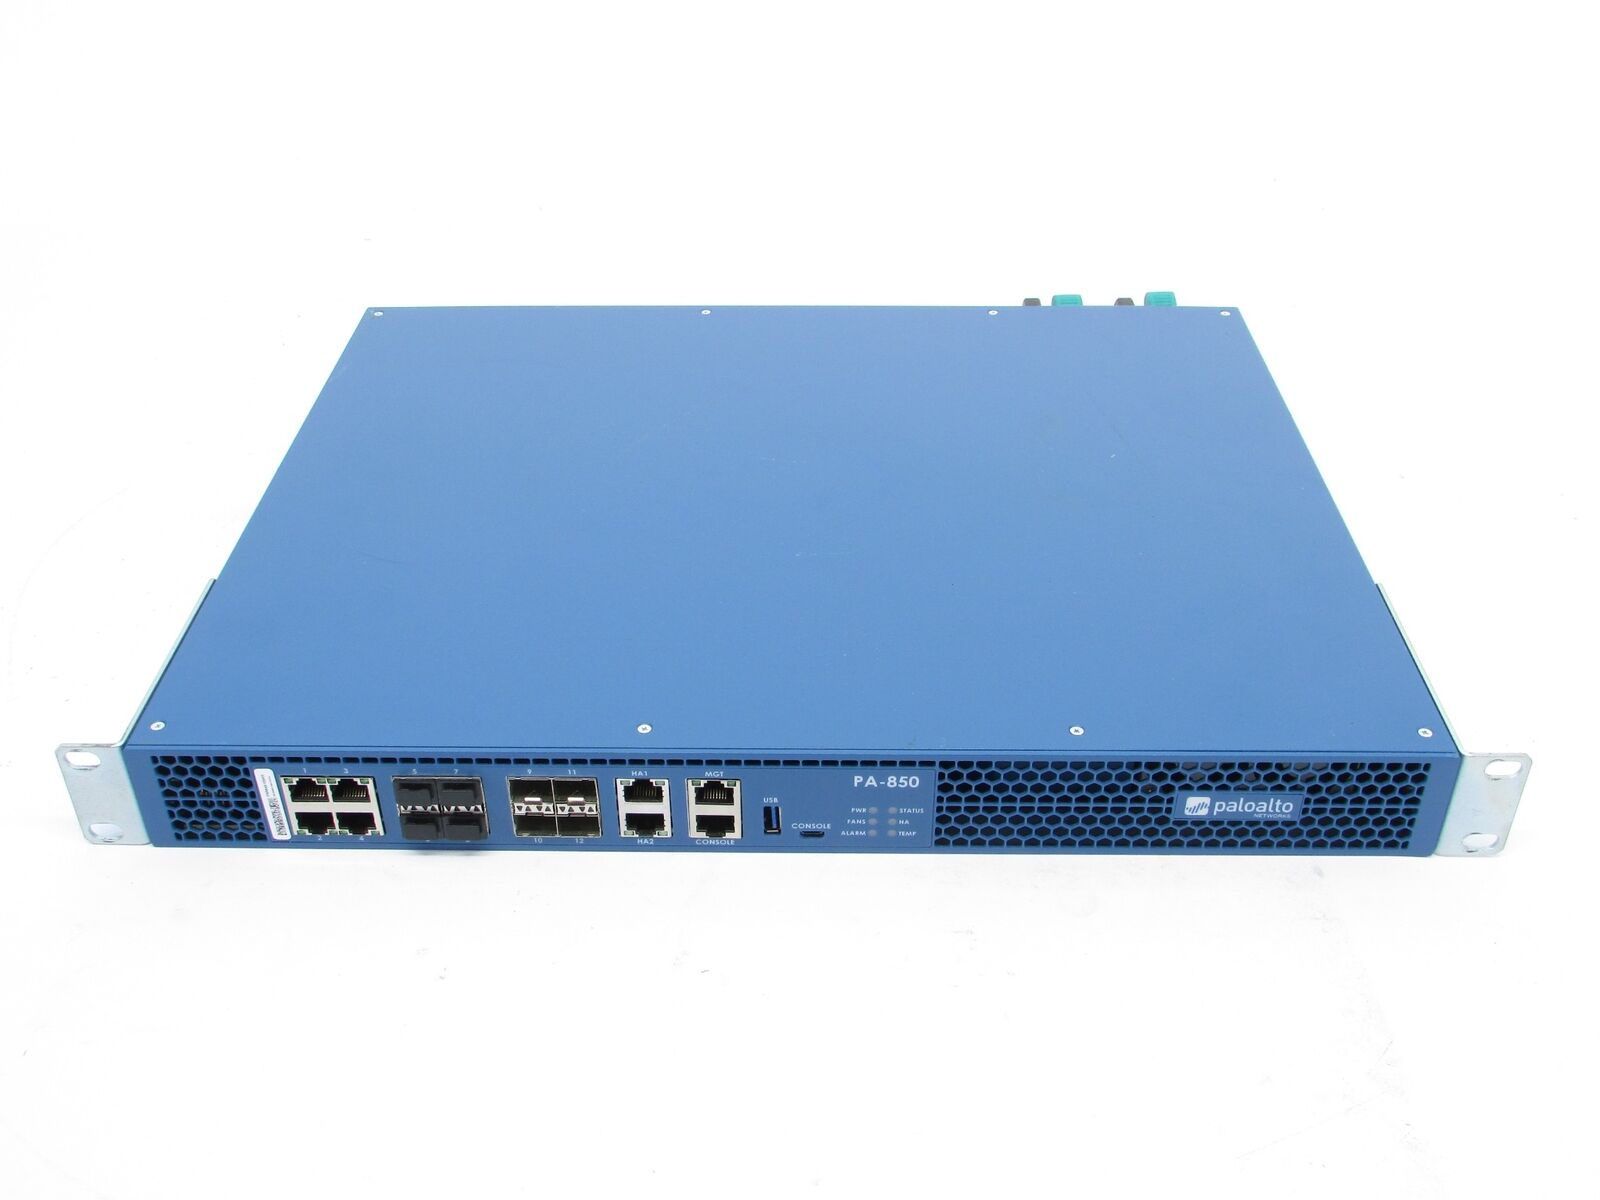 Palo Alto Networks PA-850 Enterprise 1U Security Firewall Appliance W/ Rack Ears